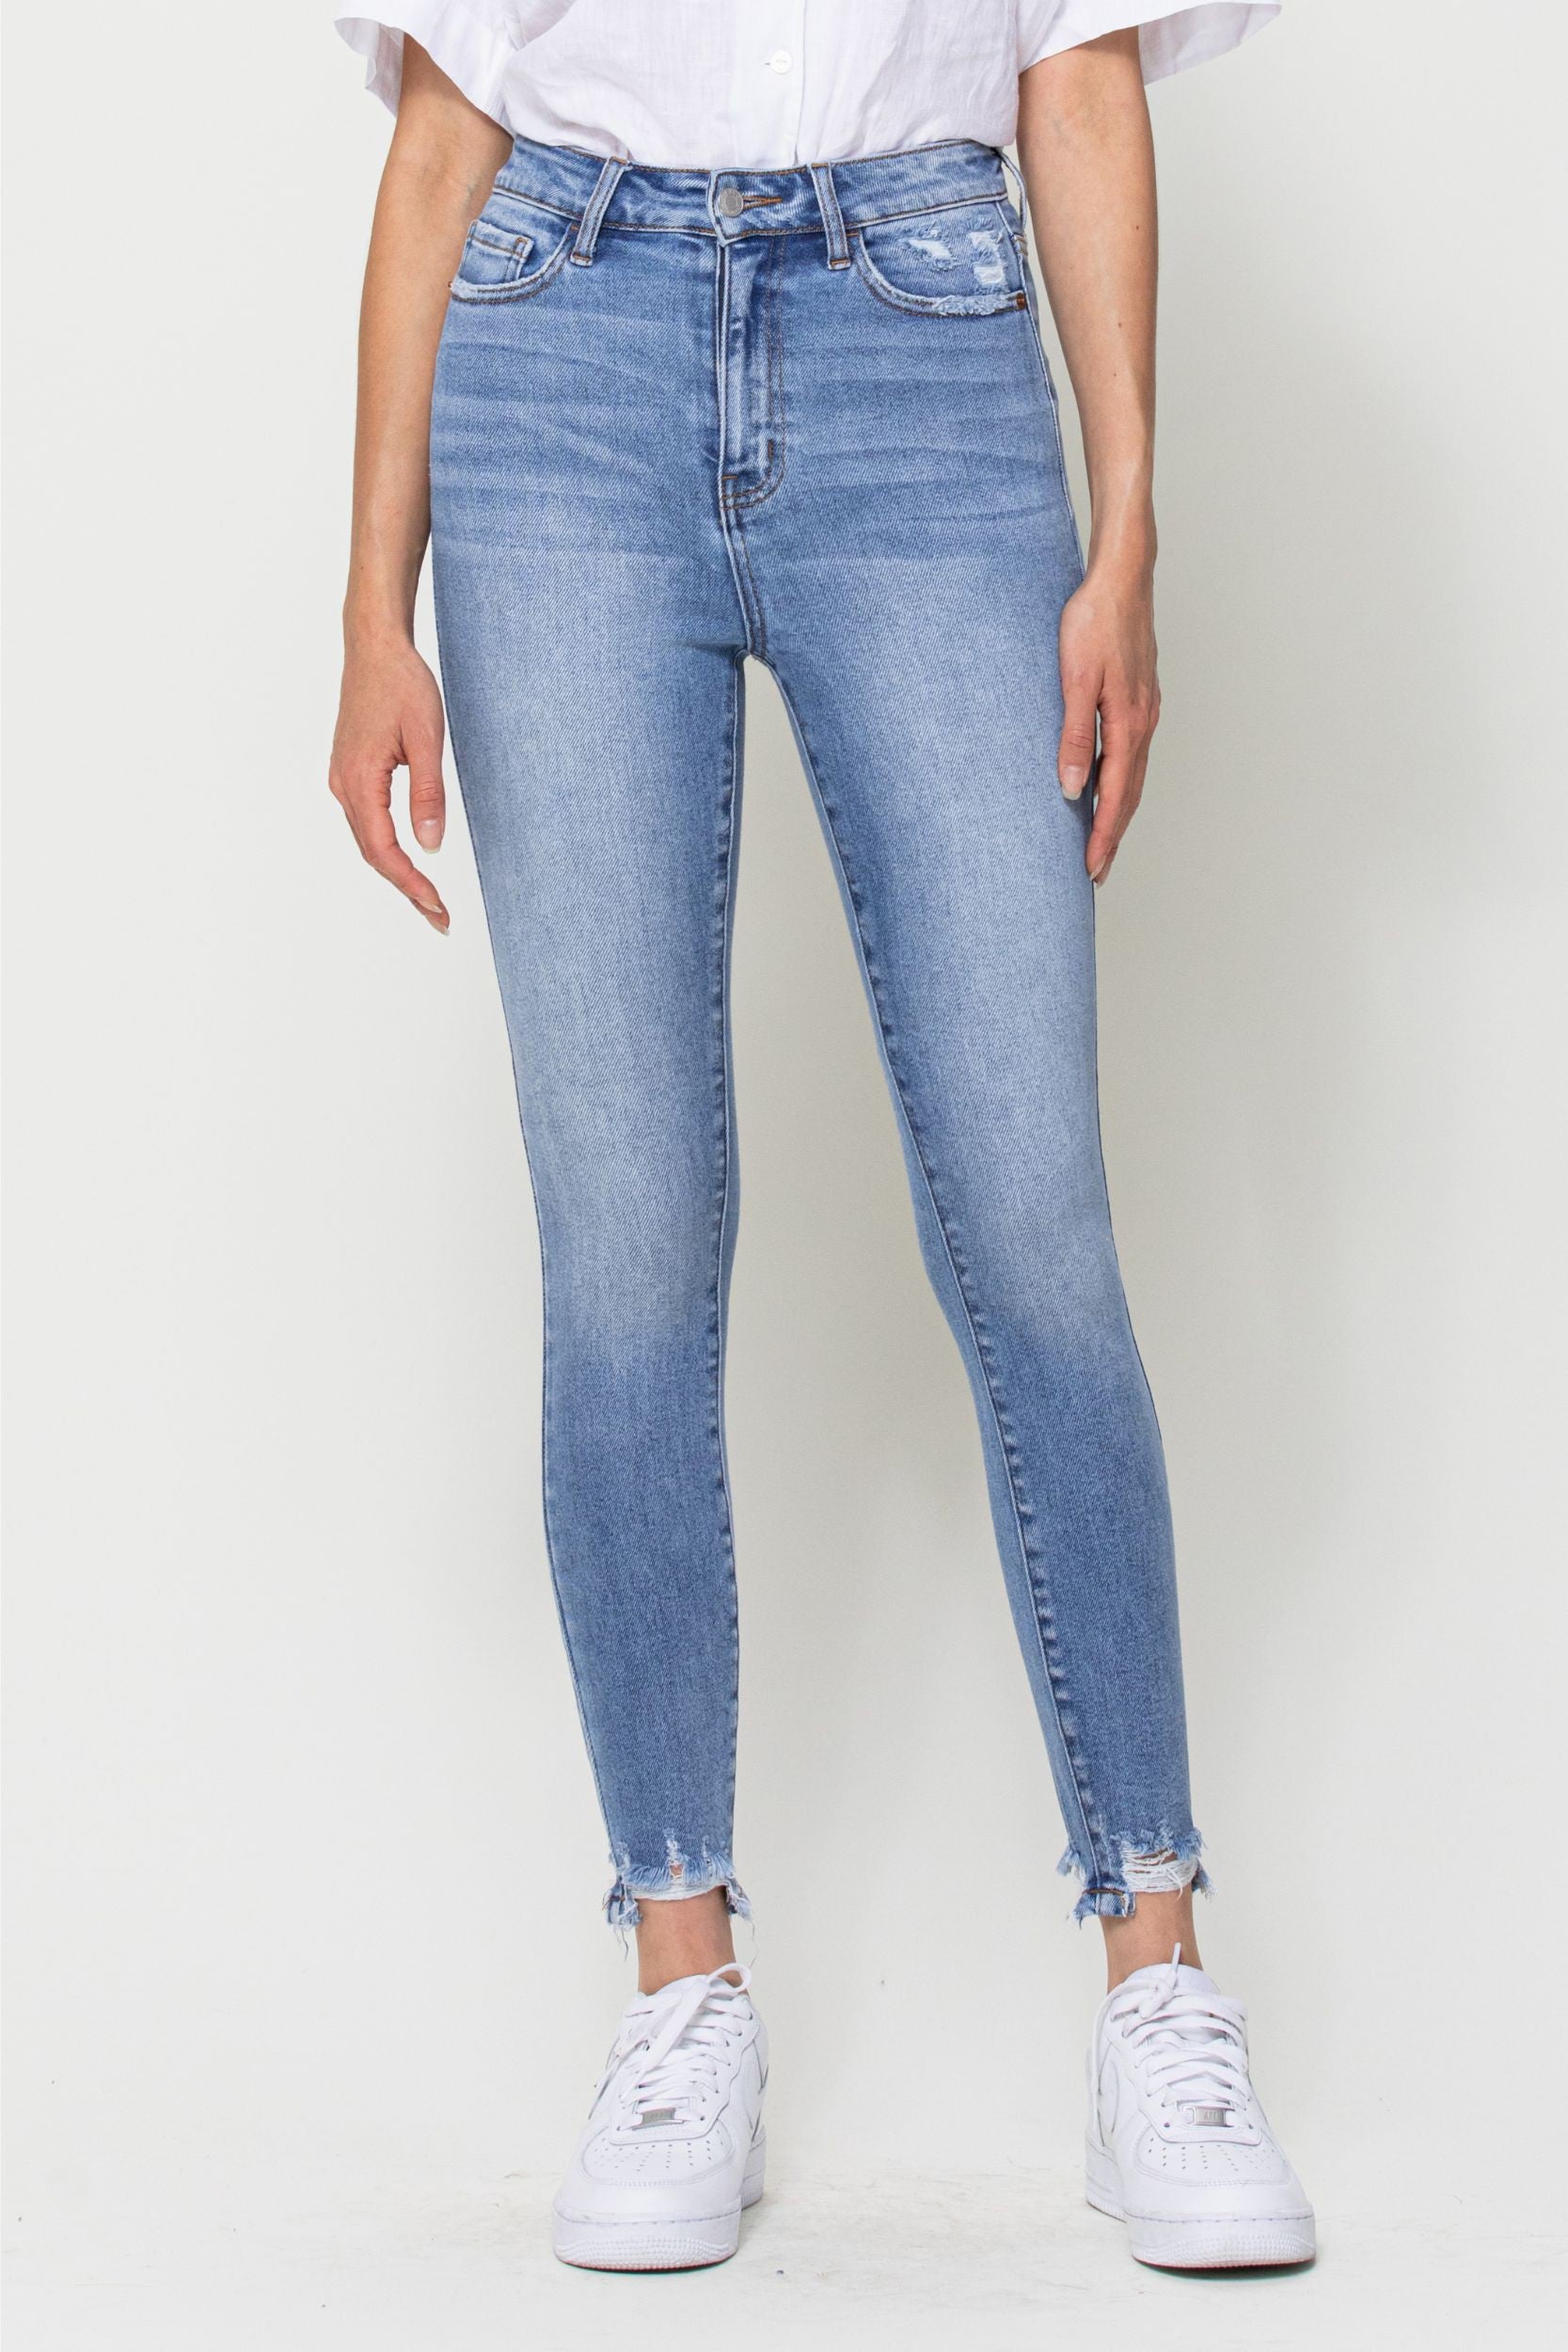 The Cecelia Denim Jeans